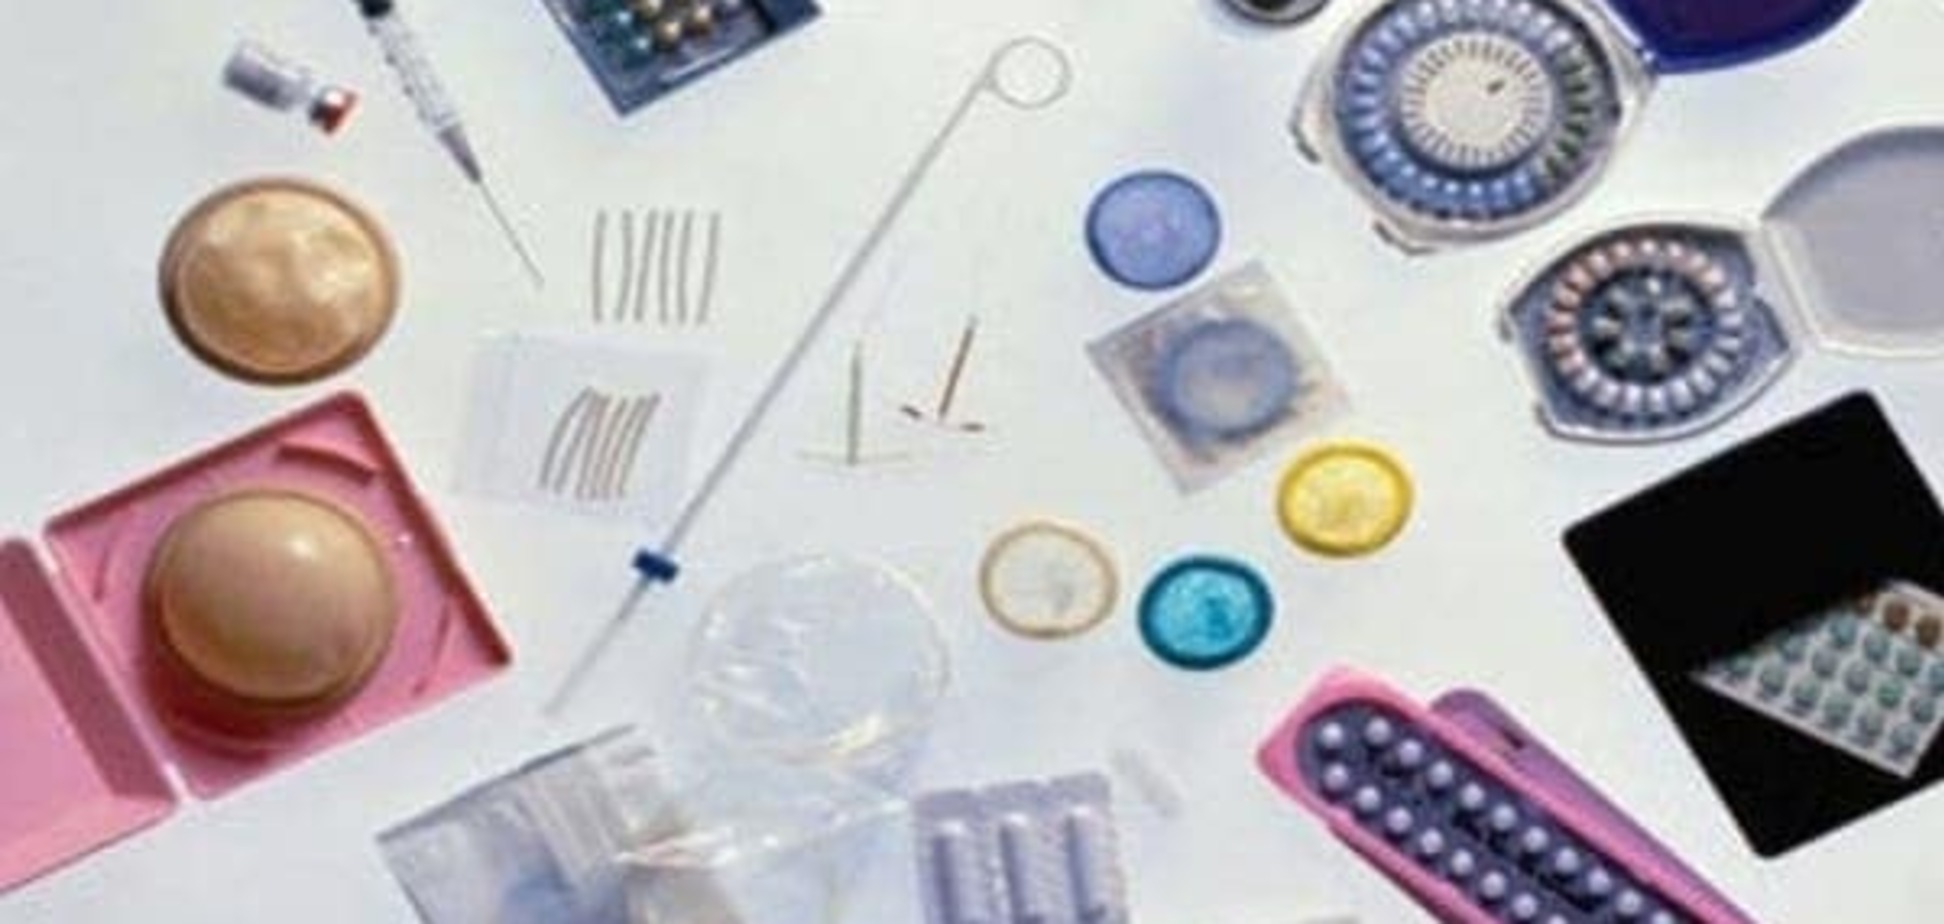 Как выбрать оптимальный метод контрацепции